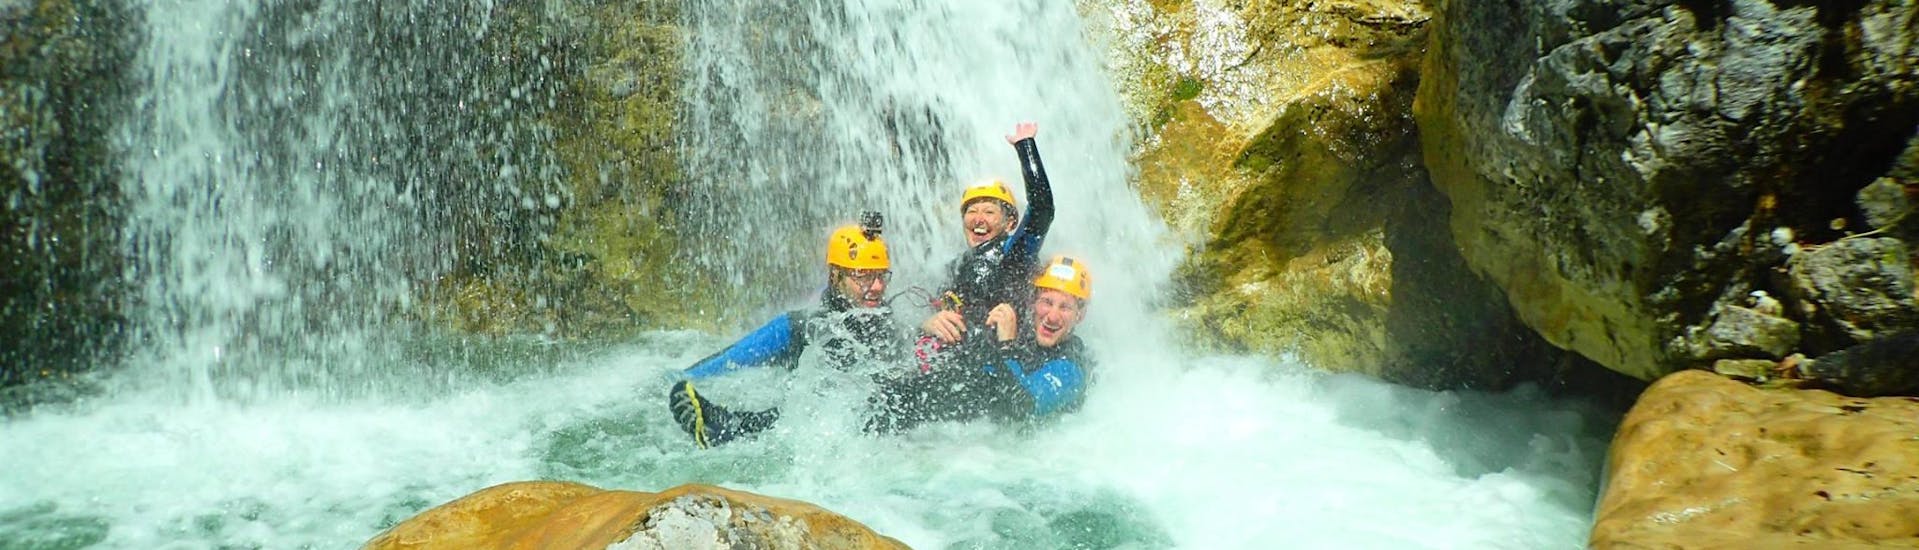 Drie vrienden genieten van een verfrissend bad onder een waterval na  het beheersen van de uitdagende abseil passages van de Ultimate  Canyoning in de Altersbach met Torrent Outdoor Experience.